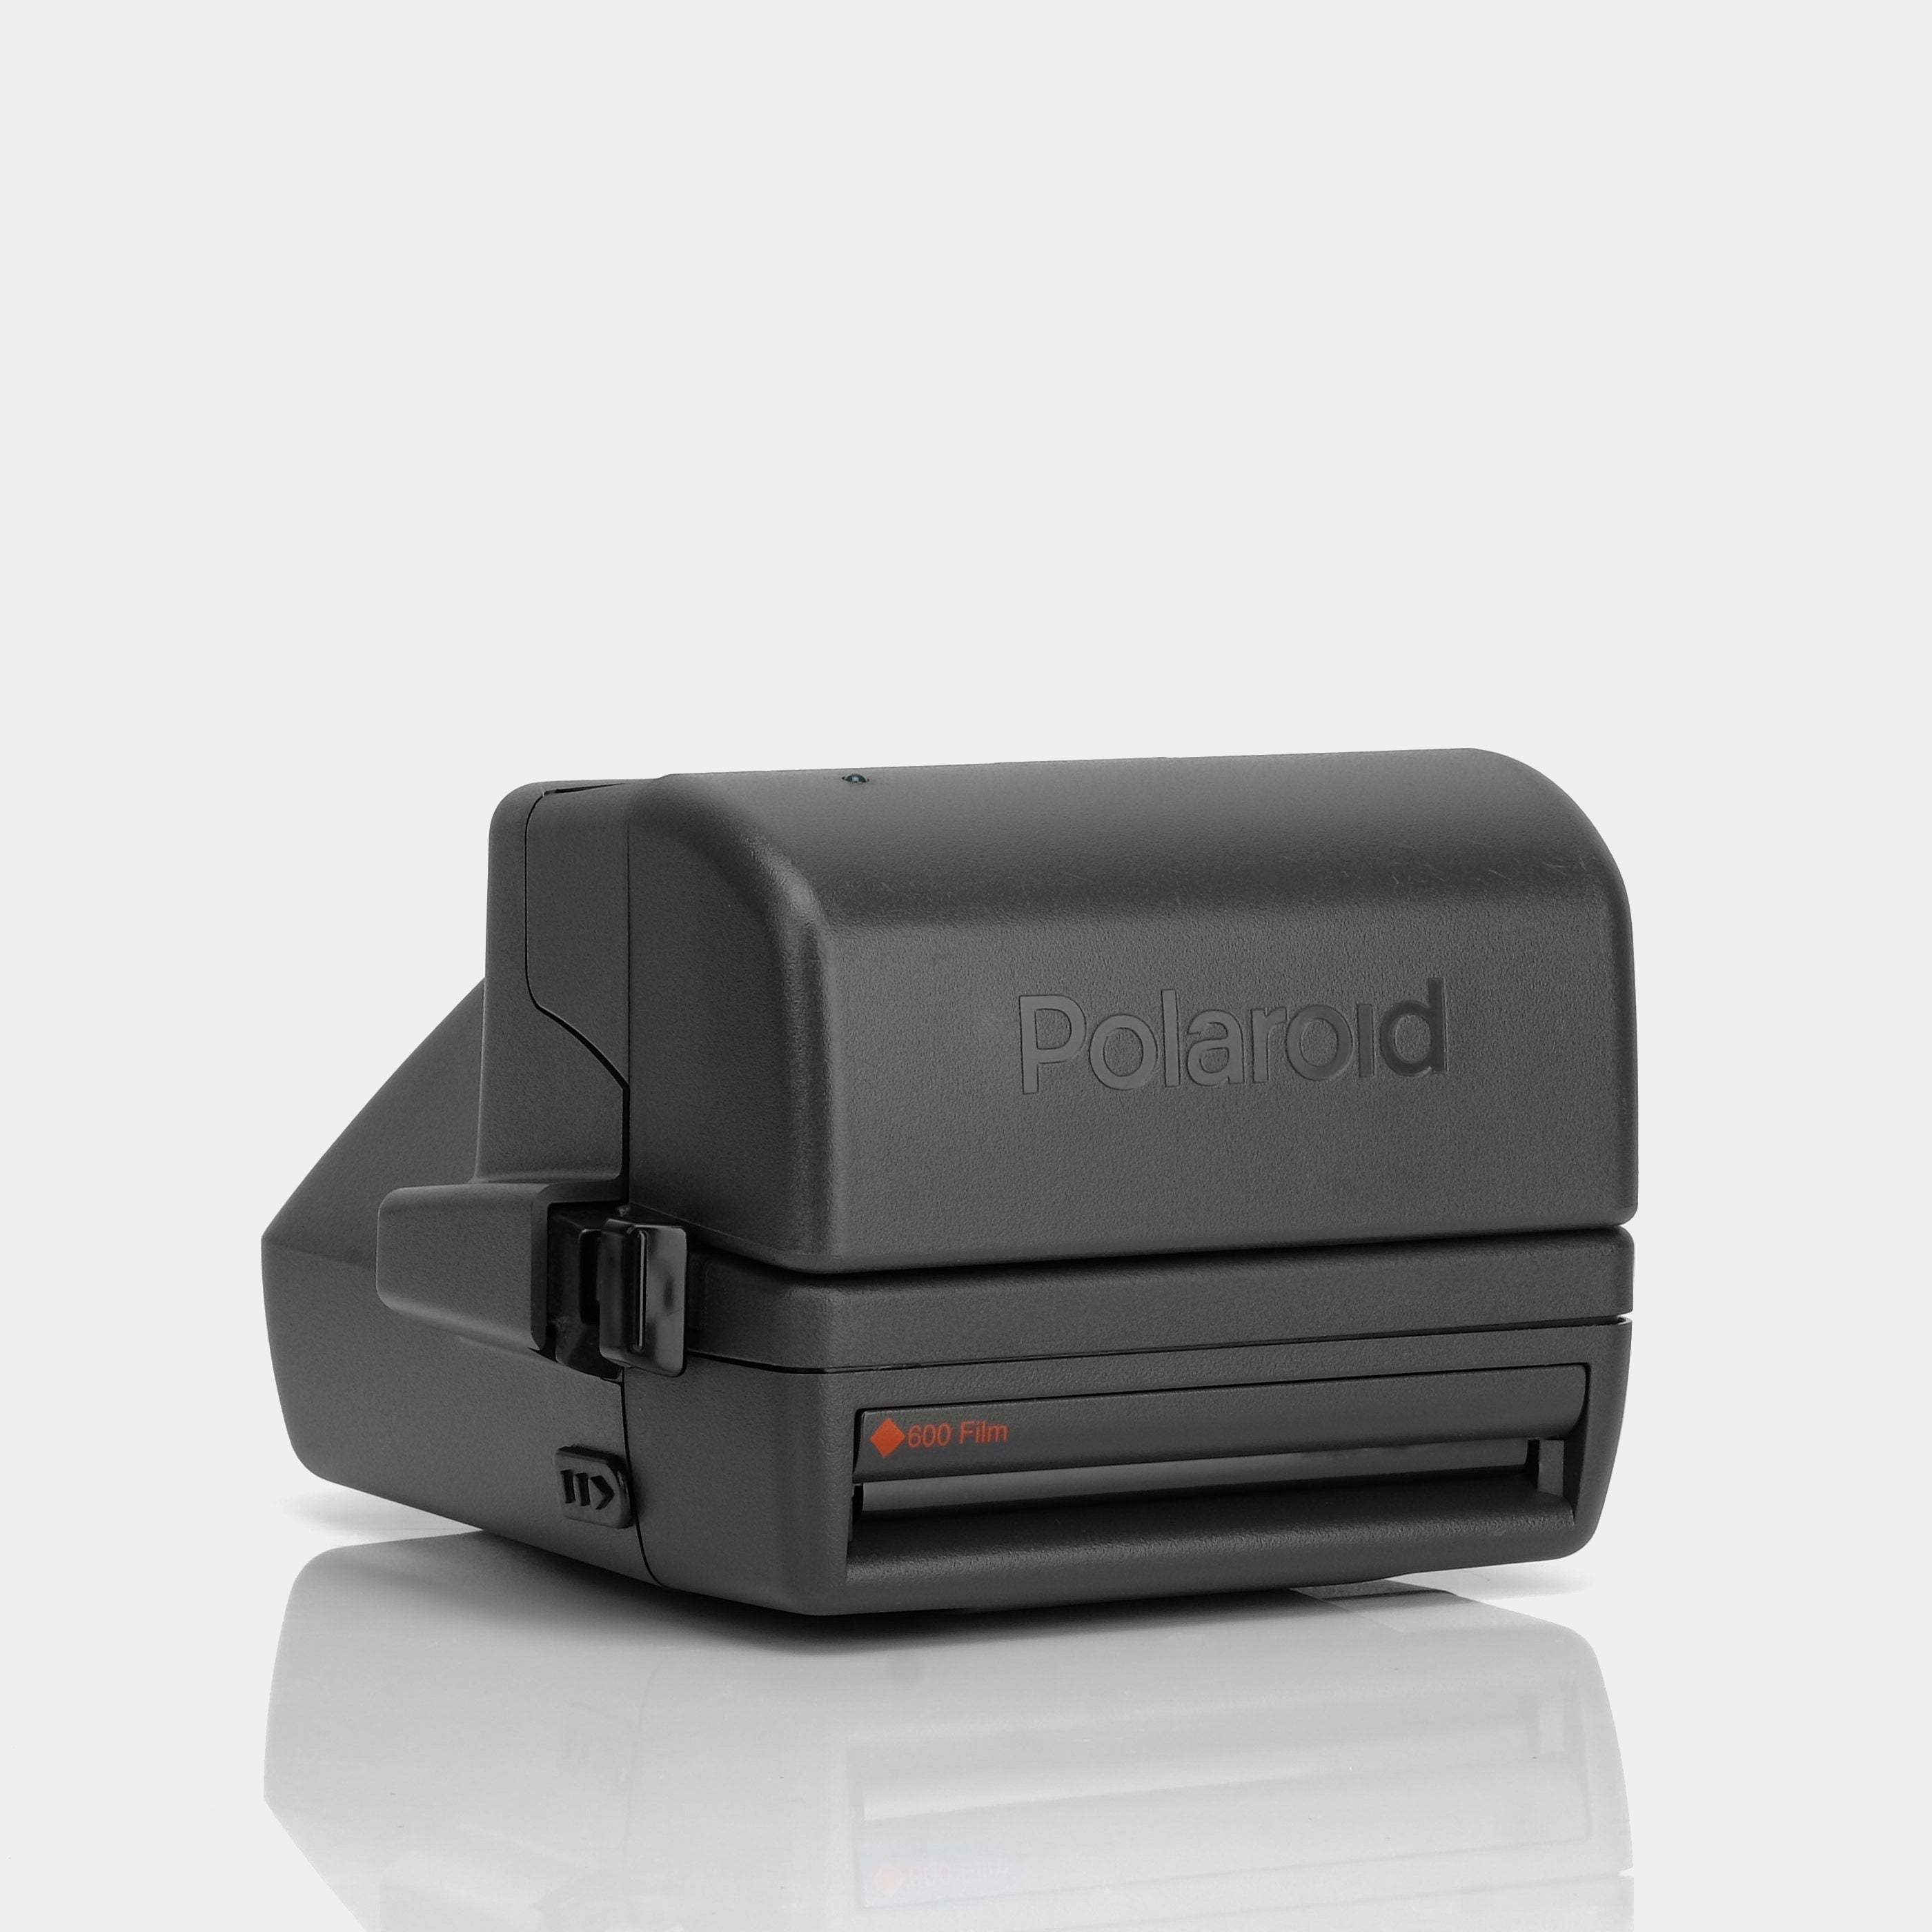 Polaroid 600 OneStep Autofocus 600 Instant Film Camera